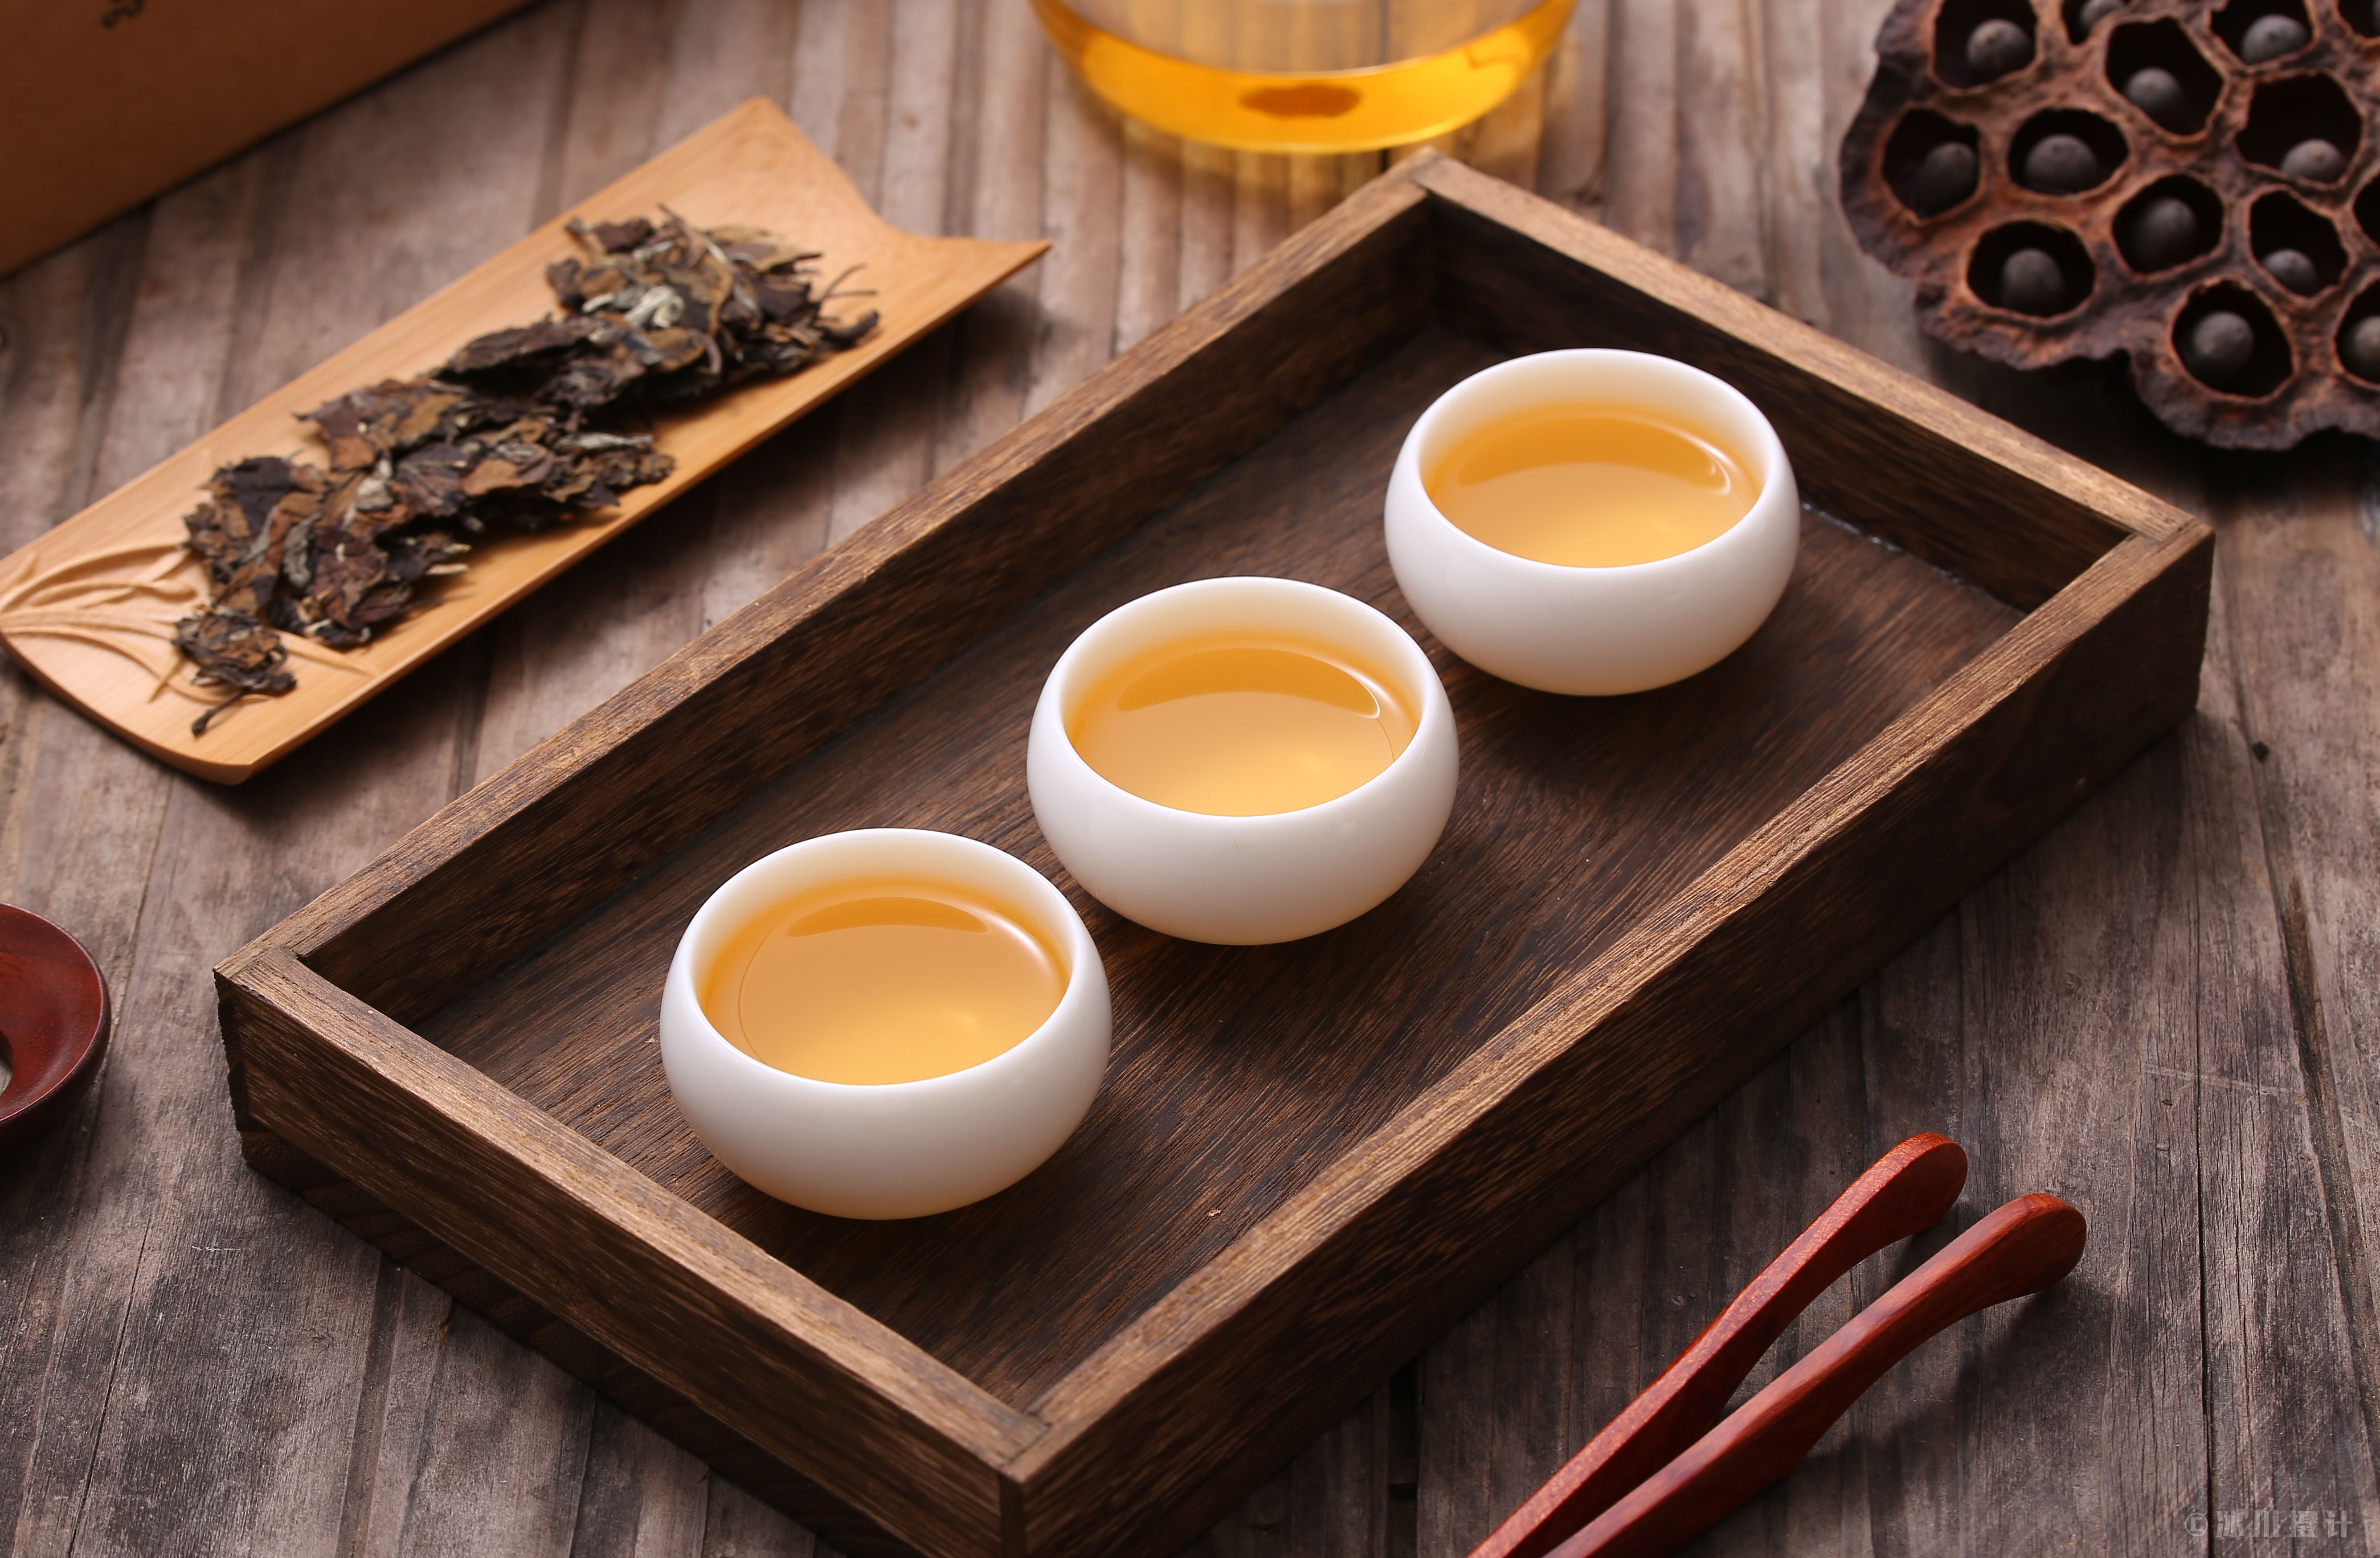 芒果体育宣传白茶有多种保健功效青岛绿林香茶业有限公司被处罚